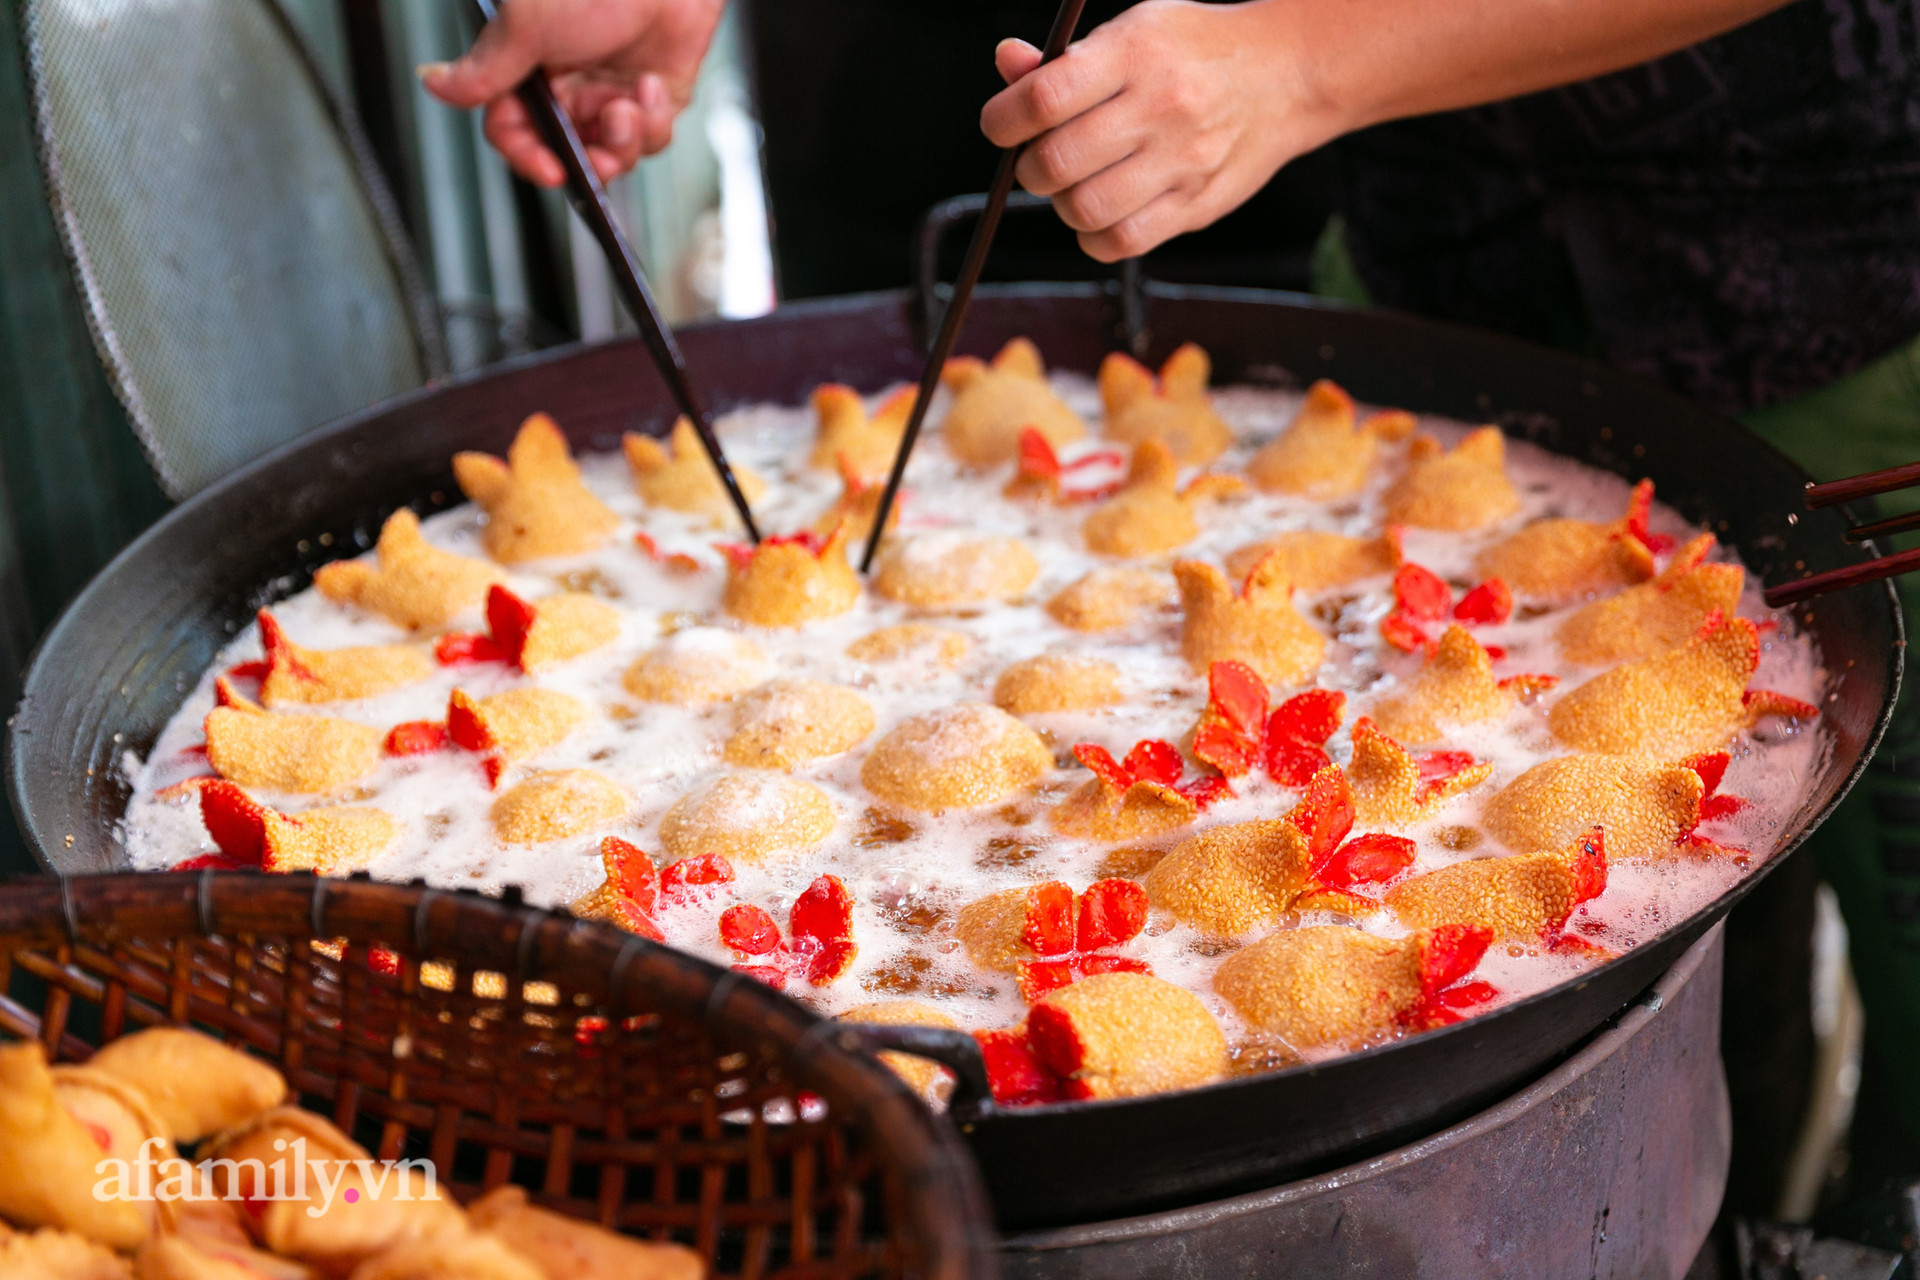 Độc đáo bánh lựu cầu duyên truyền thống của người Hoa ở Sài Gòn: Chỉ bán duy nhất một lần trong năm, 4 người phụ làm hơn 1.000 cái mà bán sạch trong 1 tiếng - Ảnh 13.